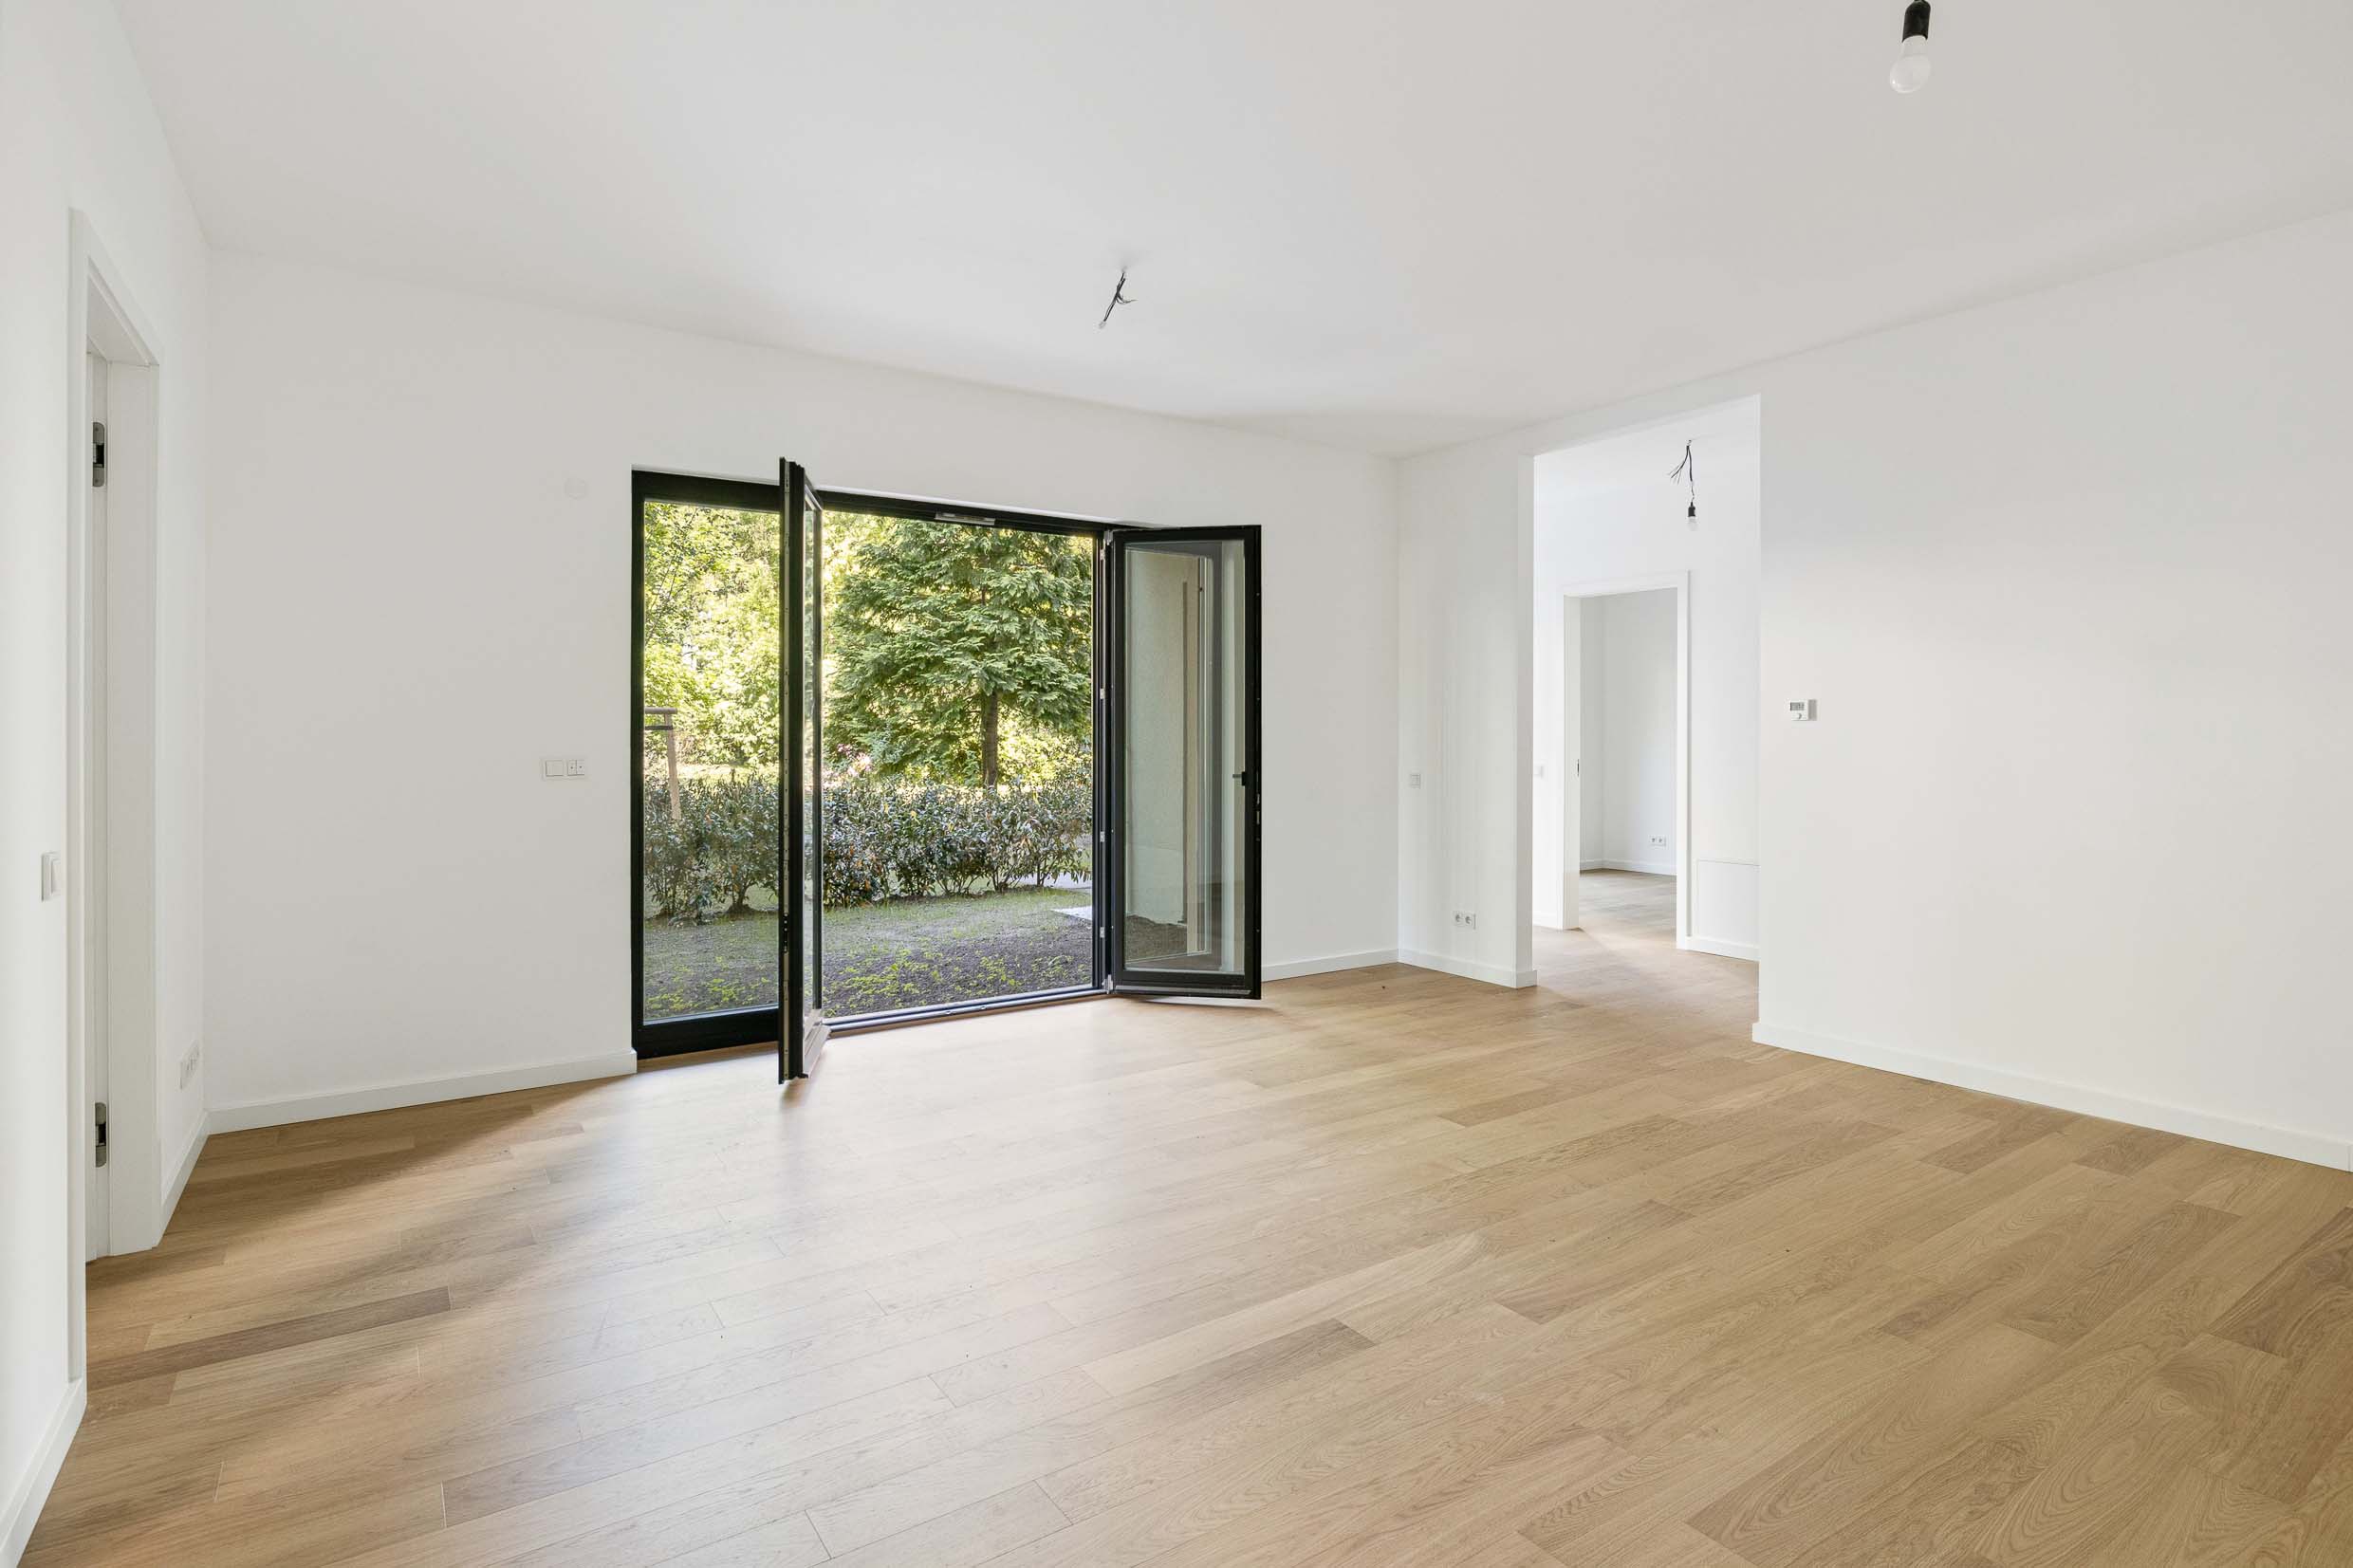 3 room garden apartment in Friedrichshain new built